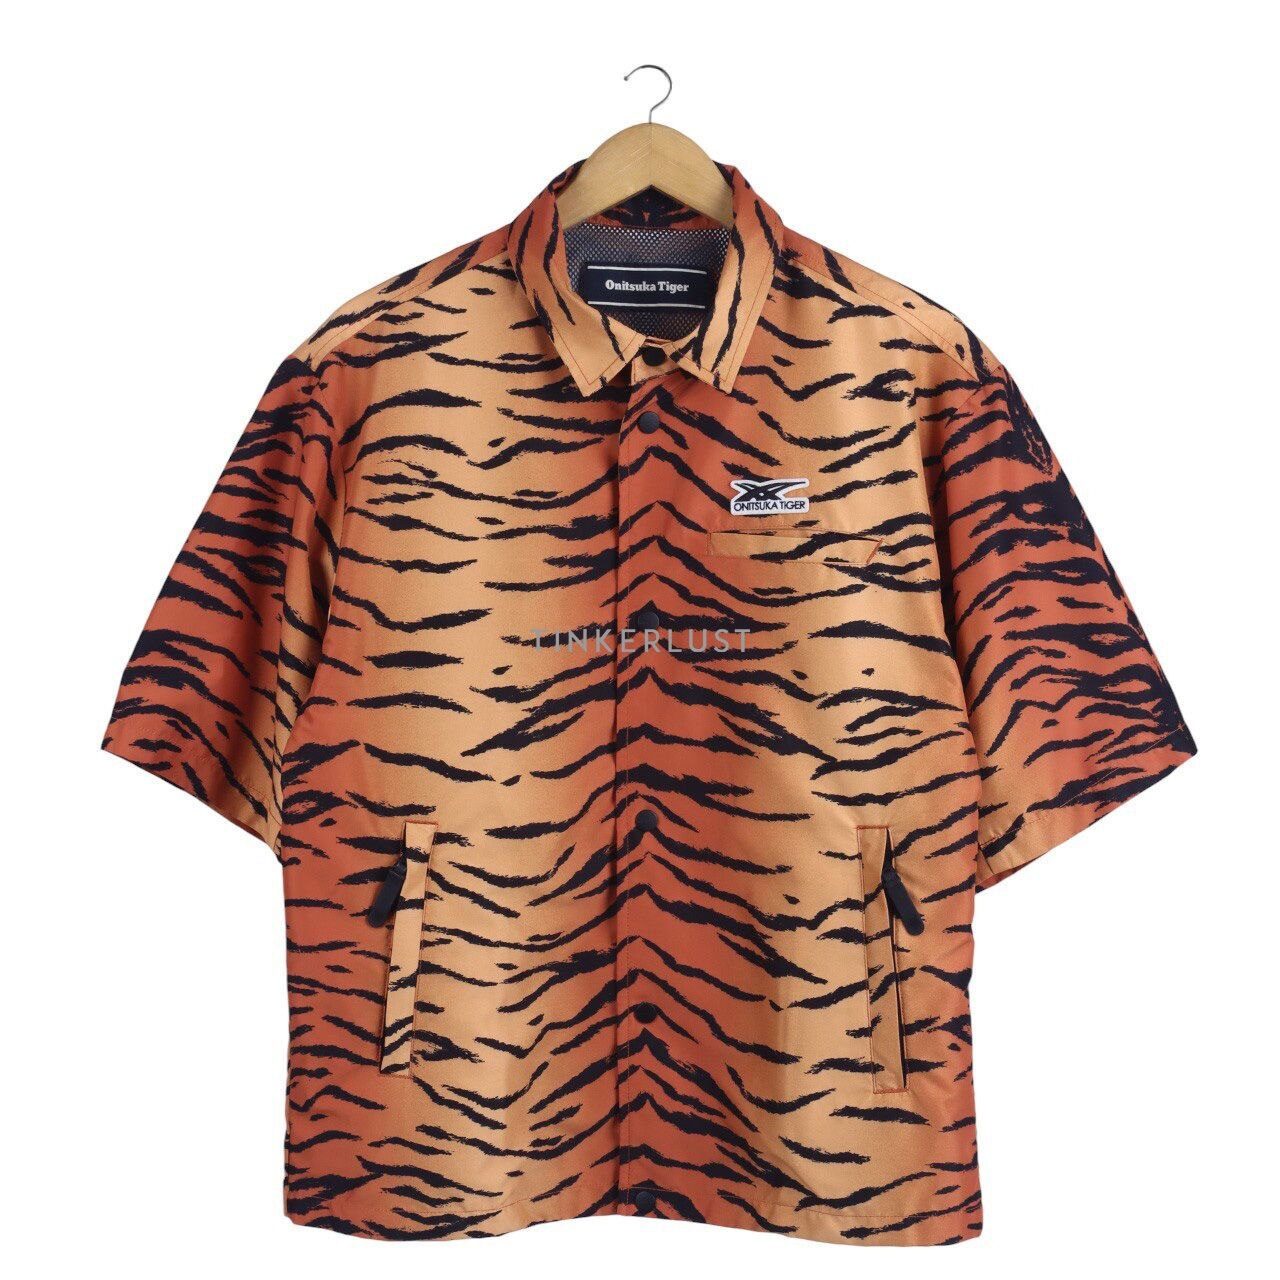 Onitsuka Tiger Black & Orange Animal Print Jacket